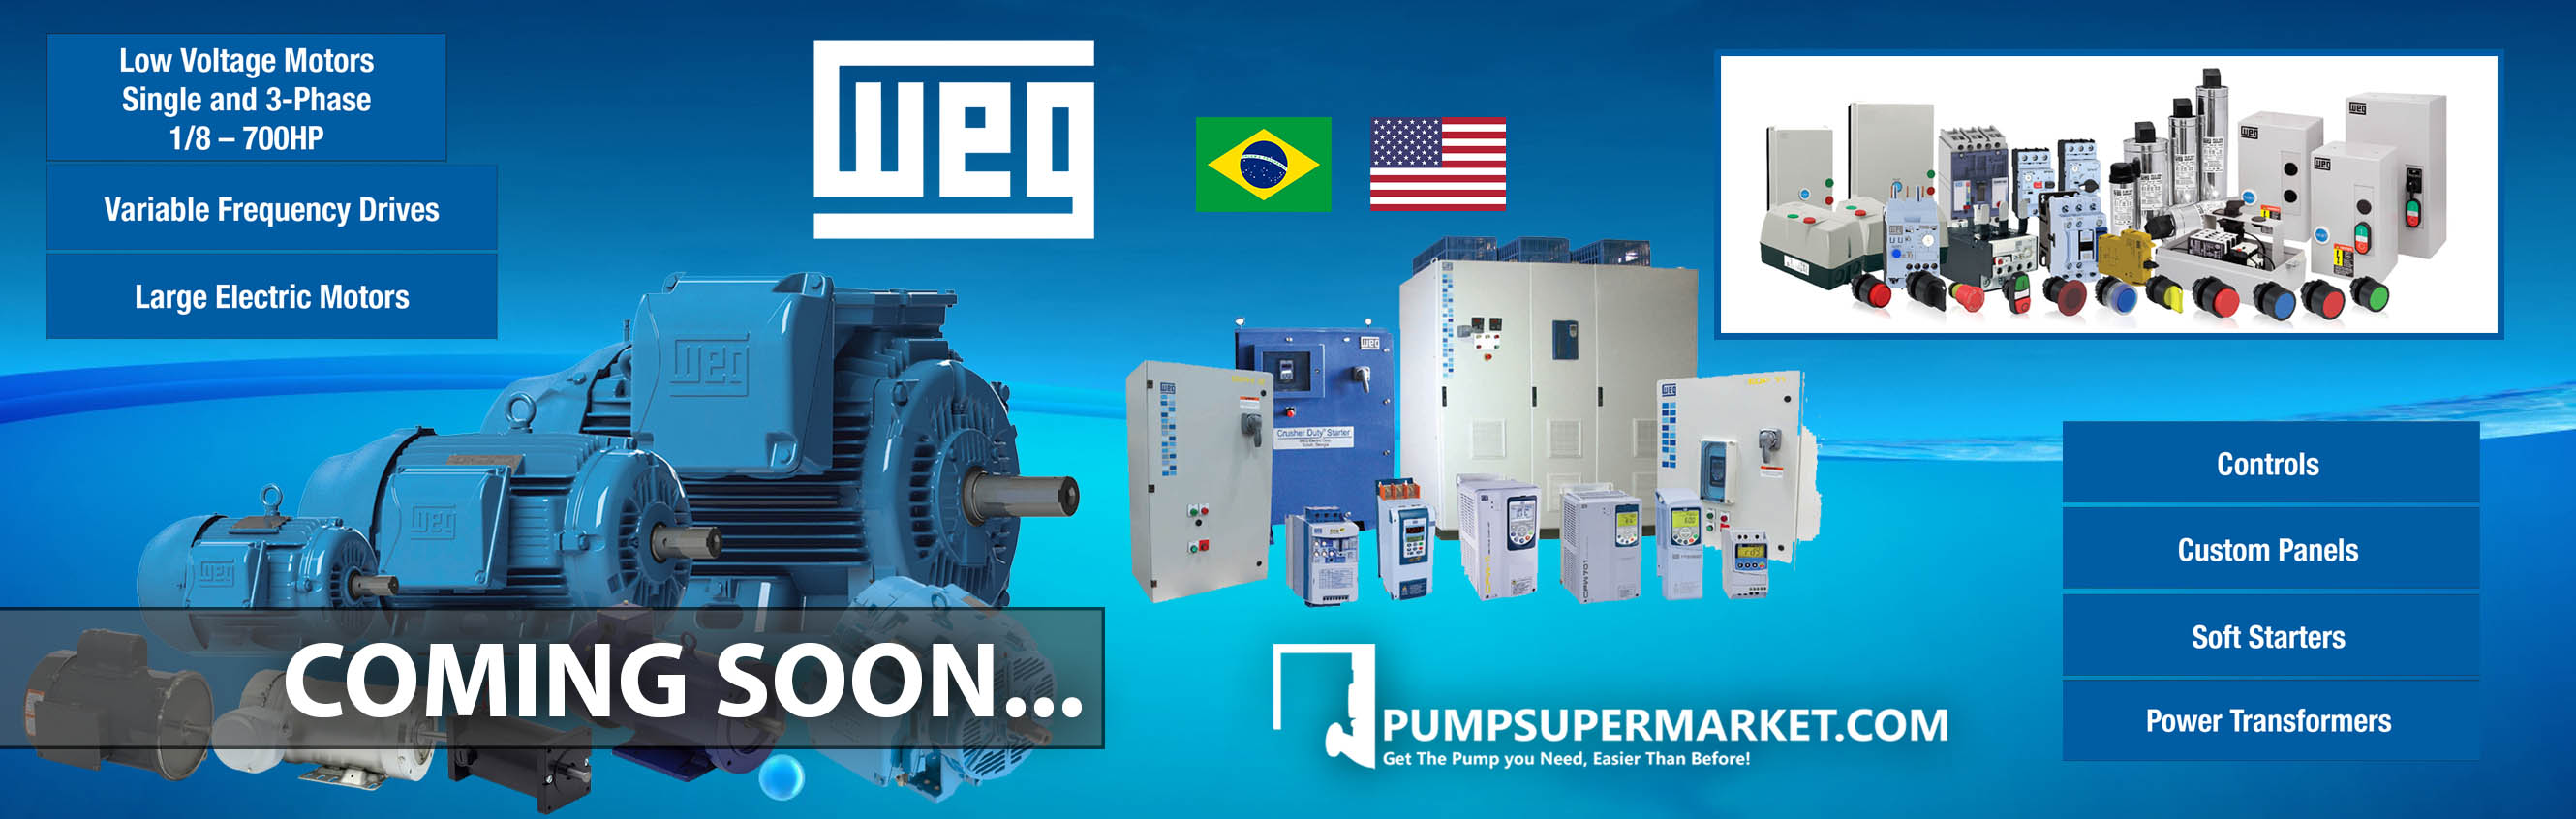 Pumpdepot-WEG- pump supermarket- water pumps in Miami Florida United States- Water pump supplier